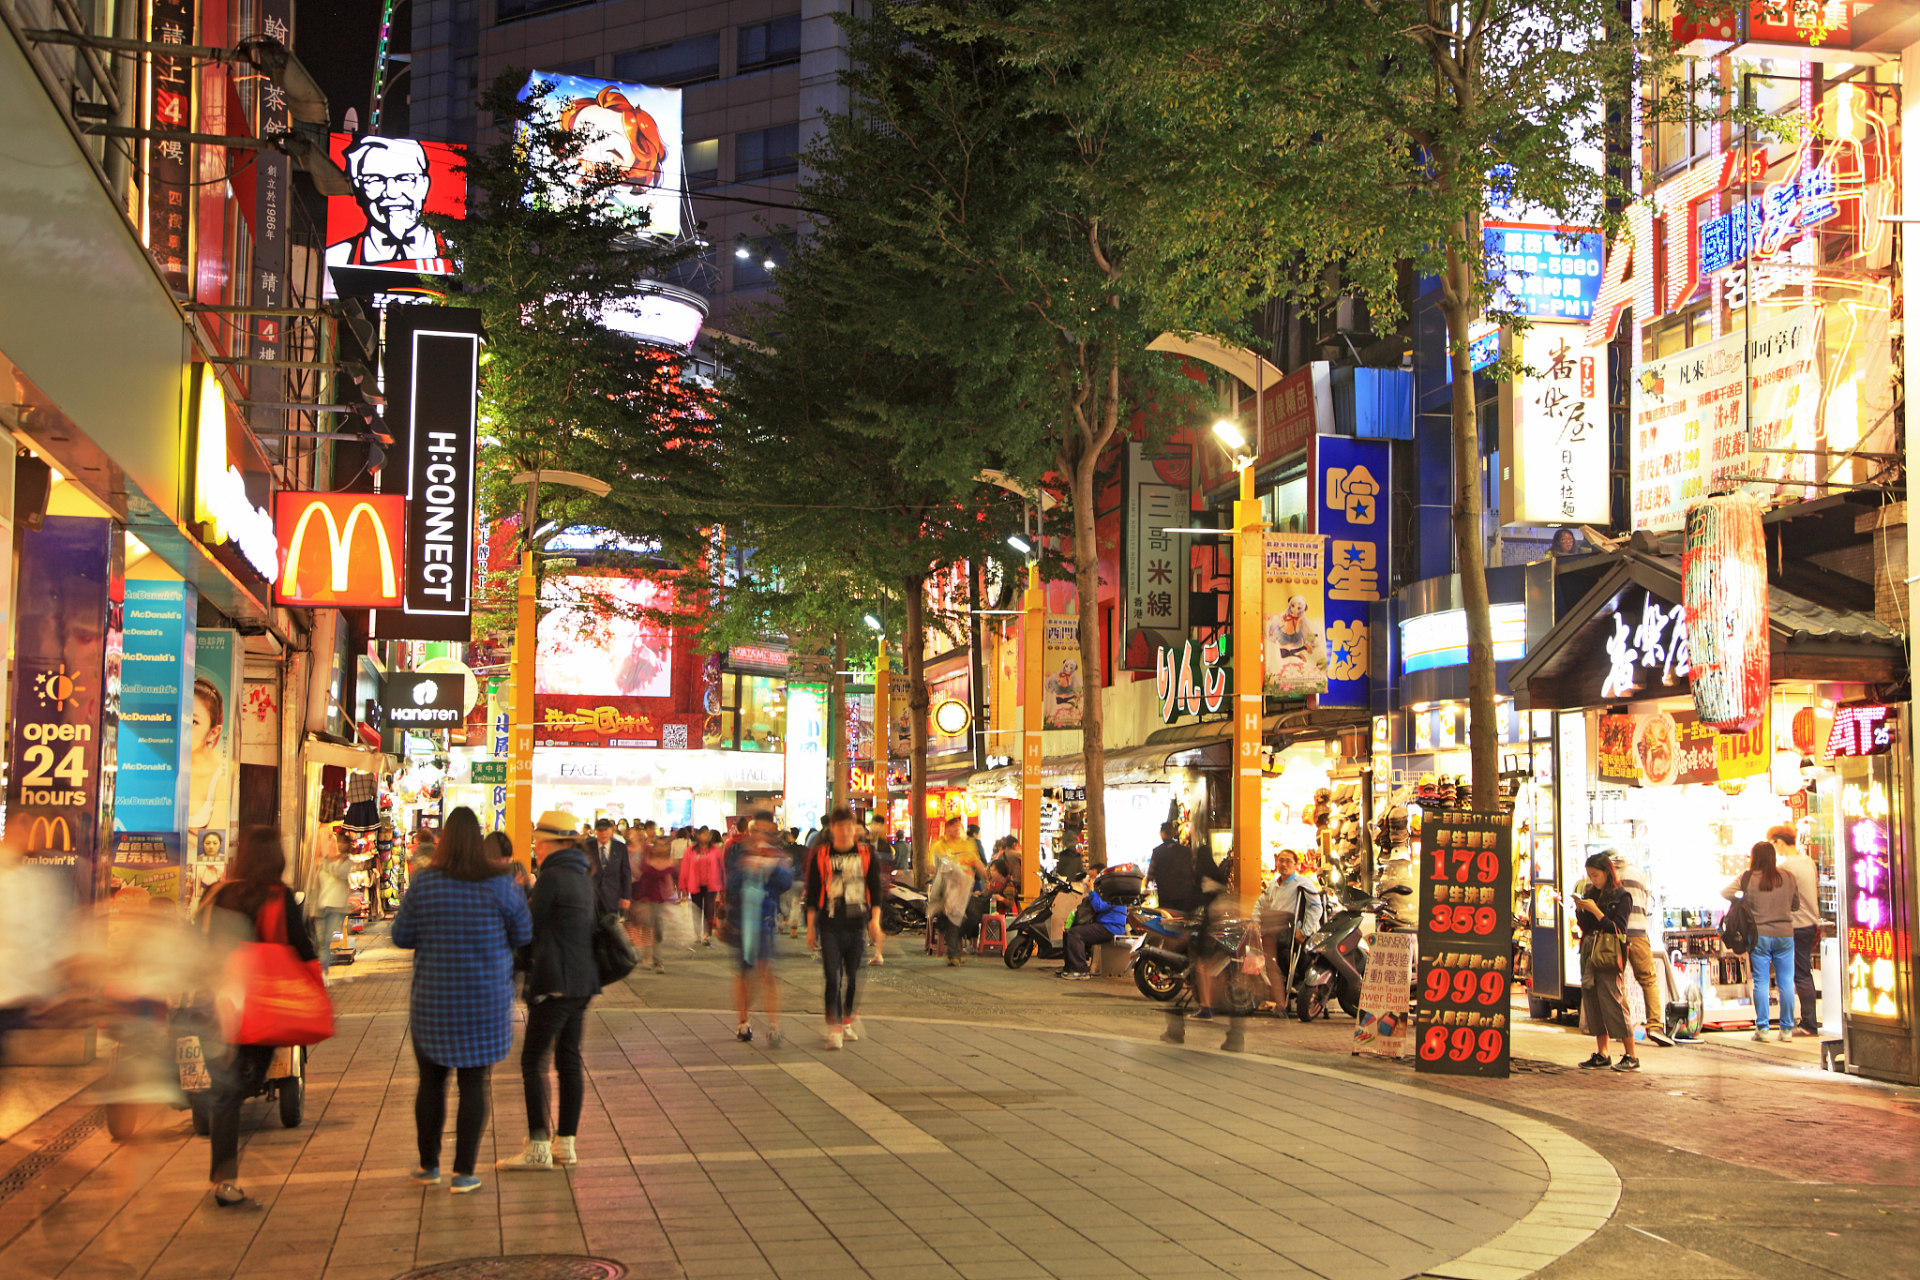 出发吧,欢迎来到青岛的心脏地带,这里是台东步行街,一个充满活力,创意